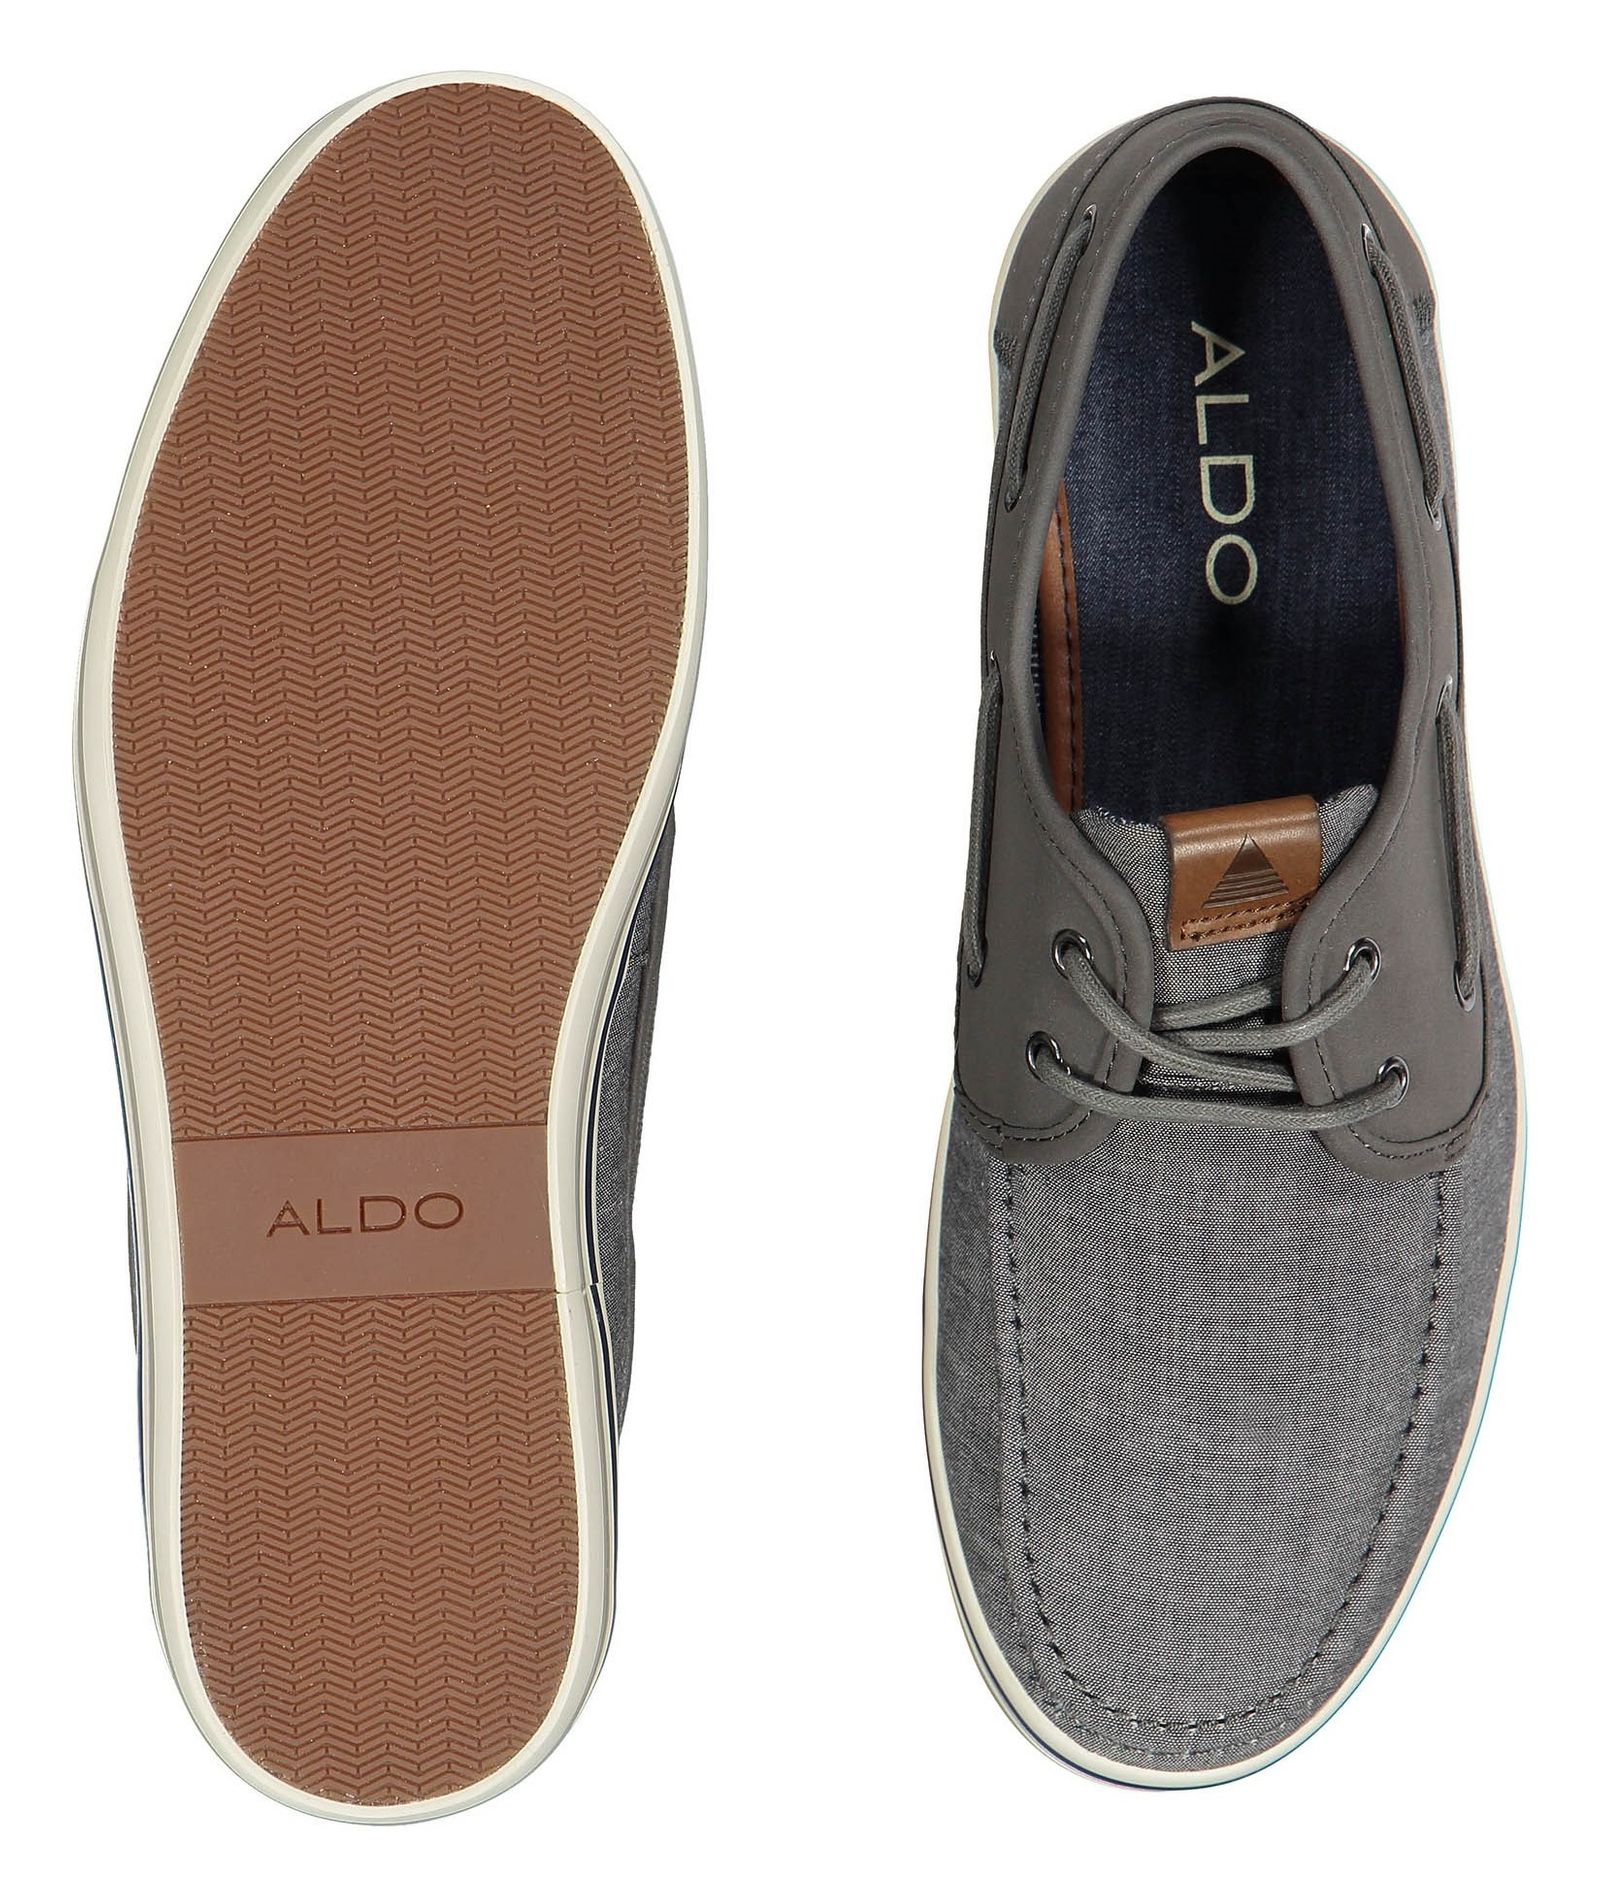 کفش راحتی مردانه - آلدو - طوسي - 3